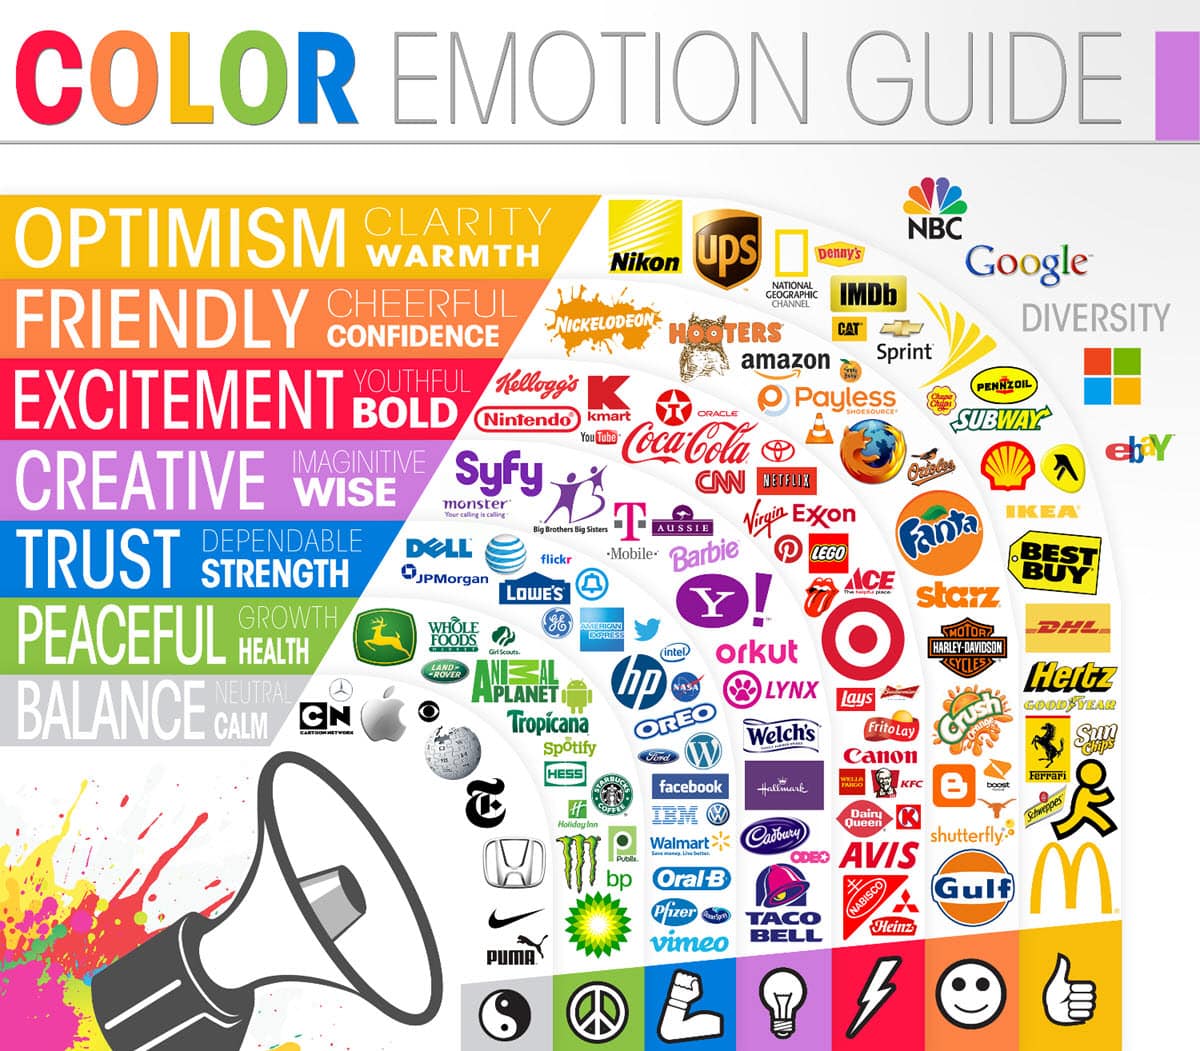 guia consejos diseño web psicologia colores guia infografia